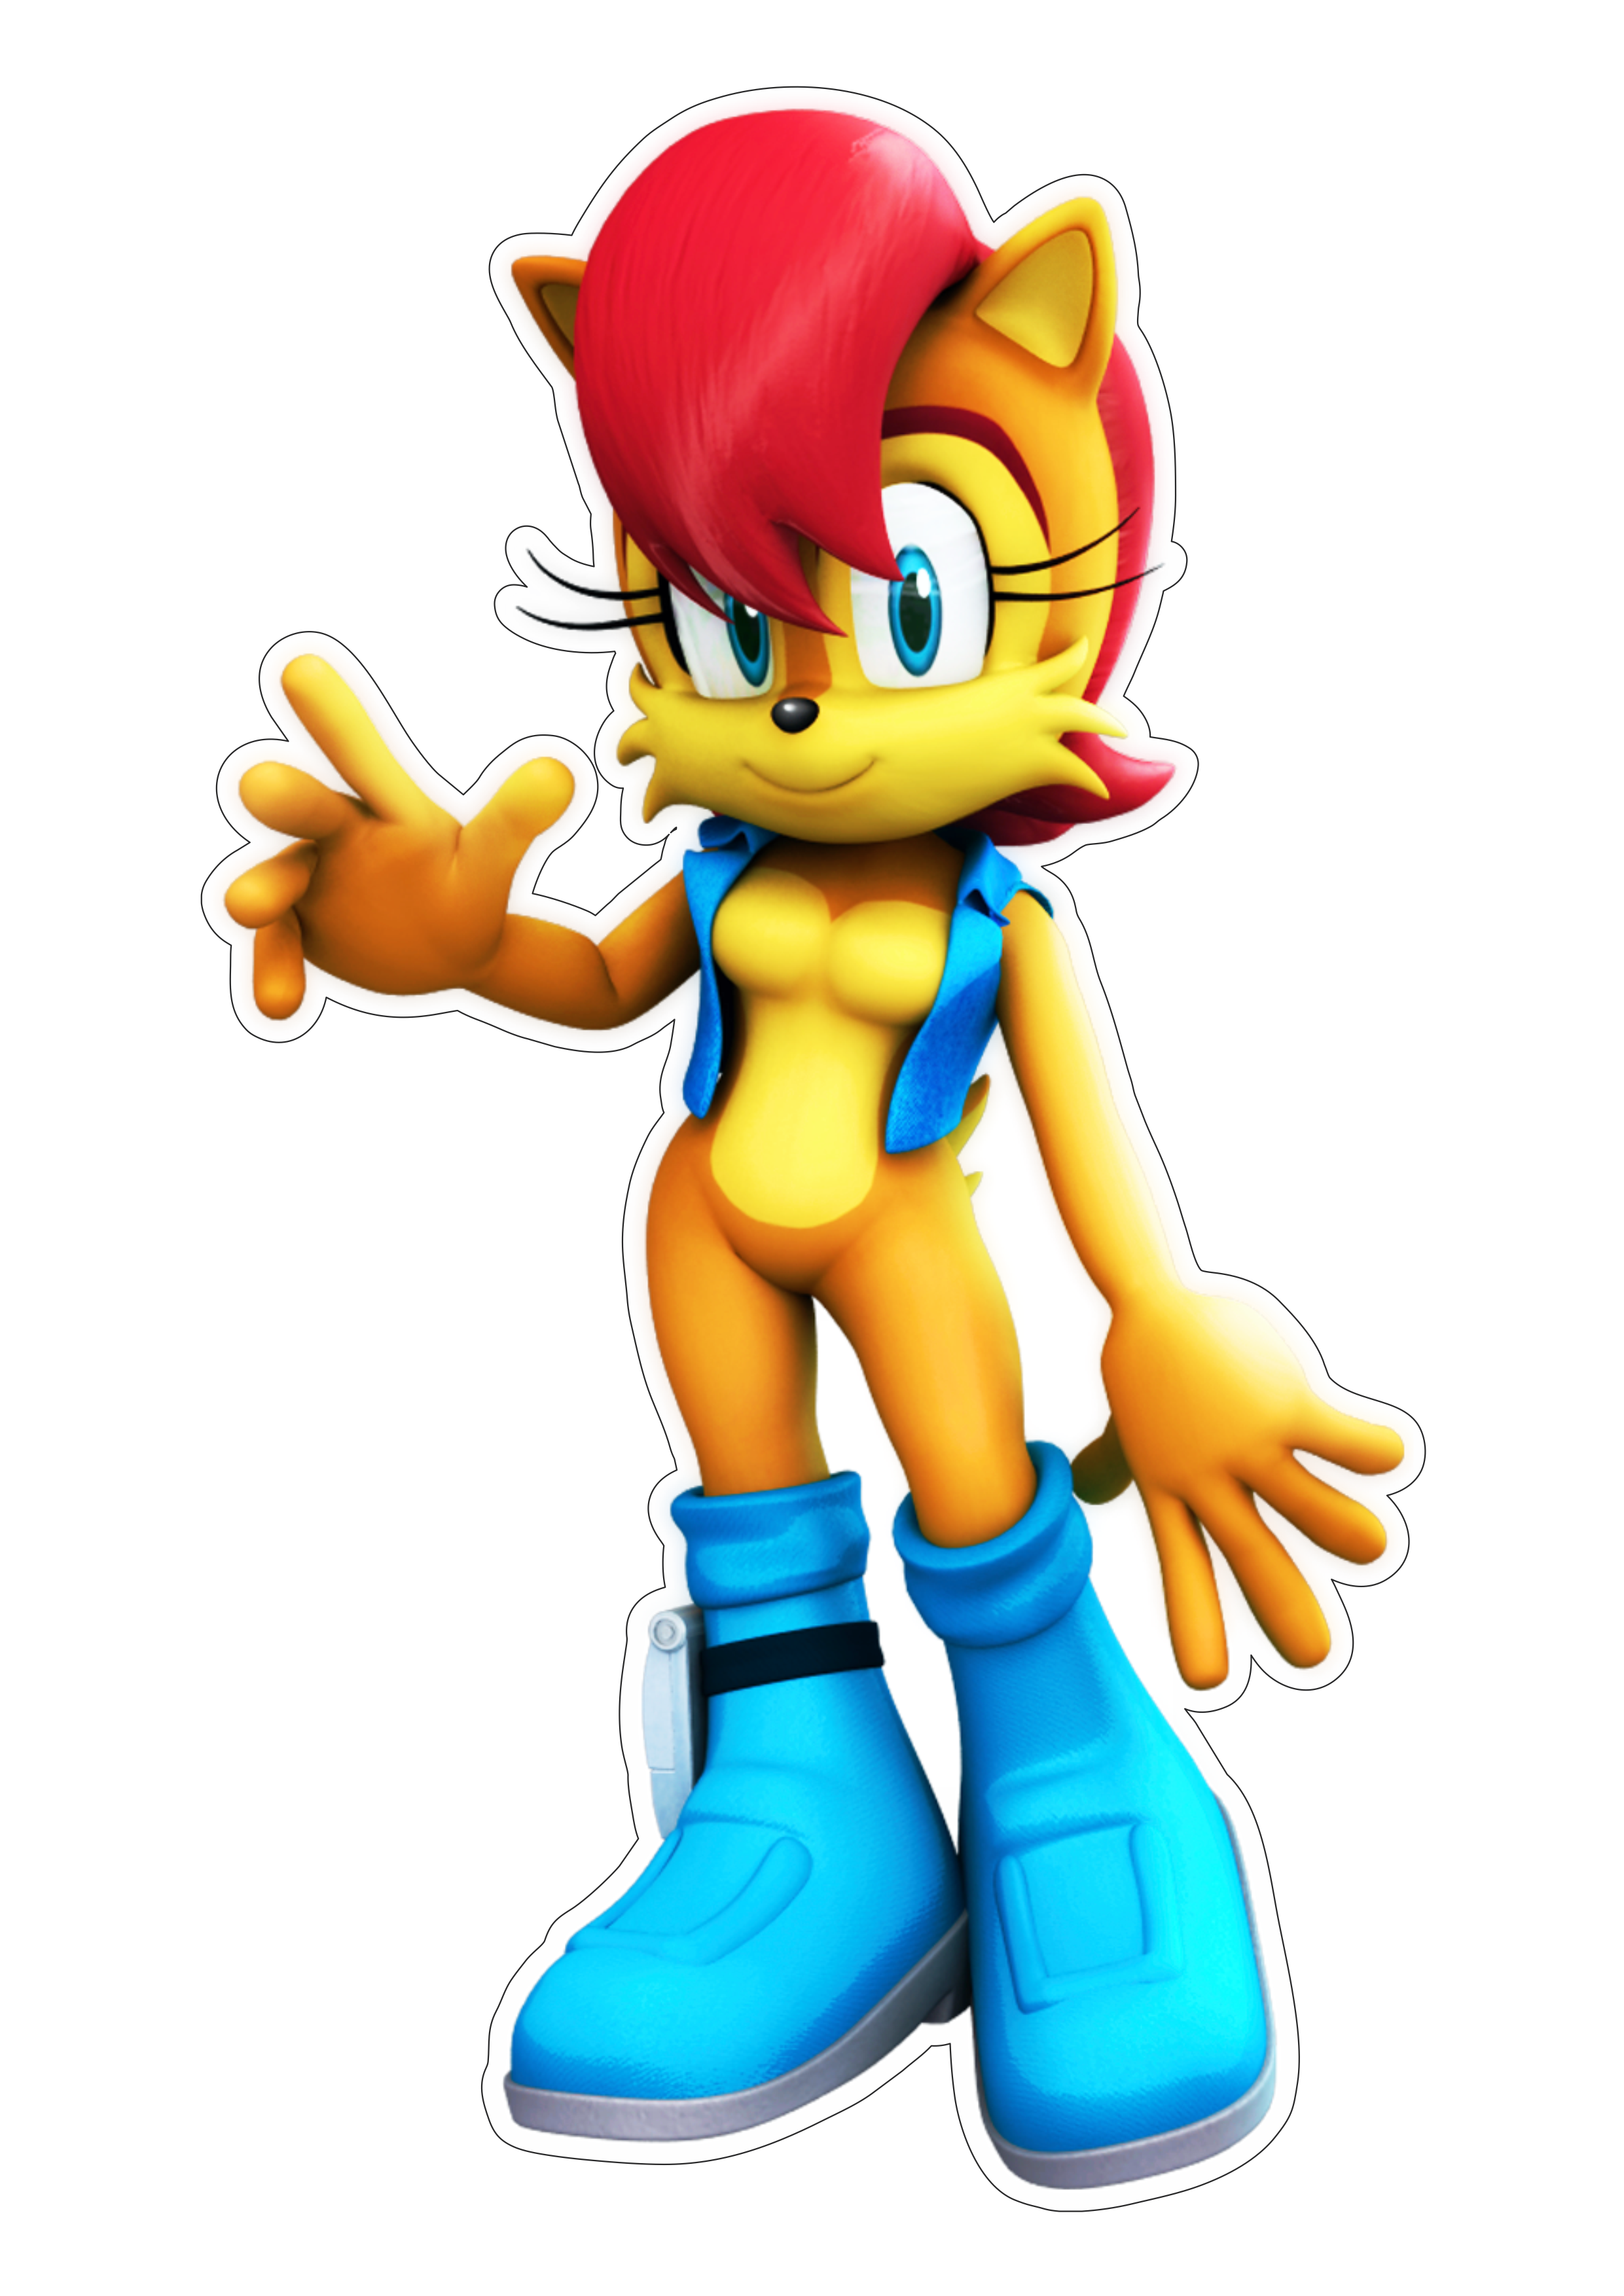 Sonic the hedgehog personagem de game Fiona Fox png